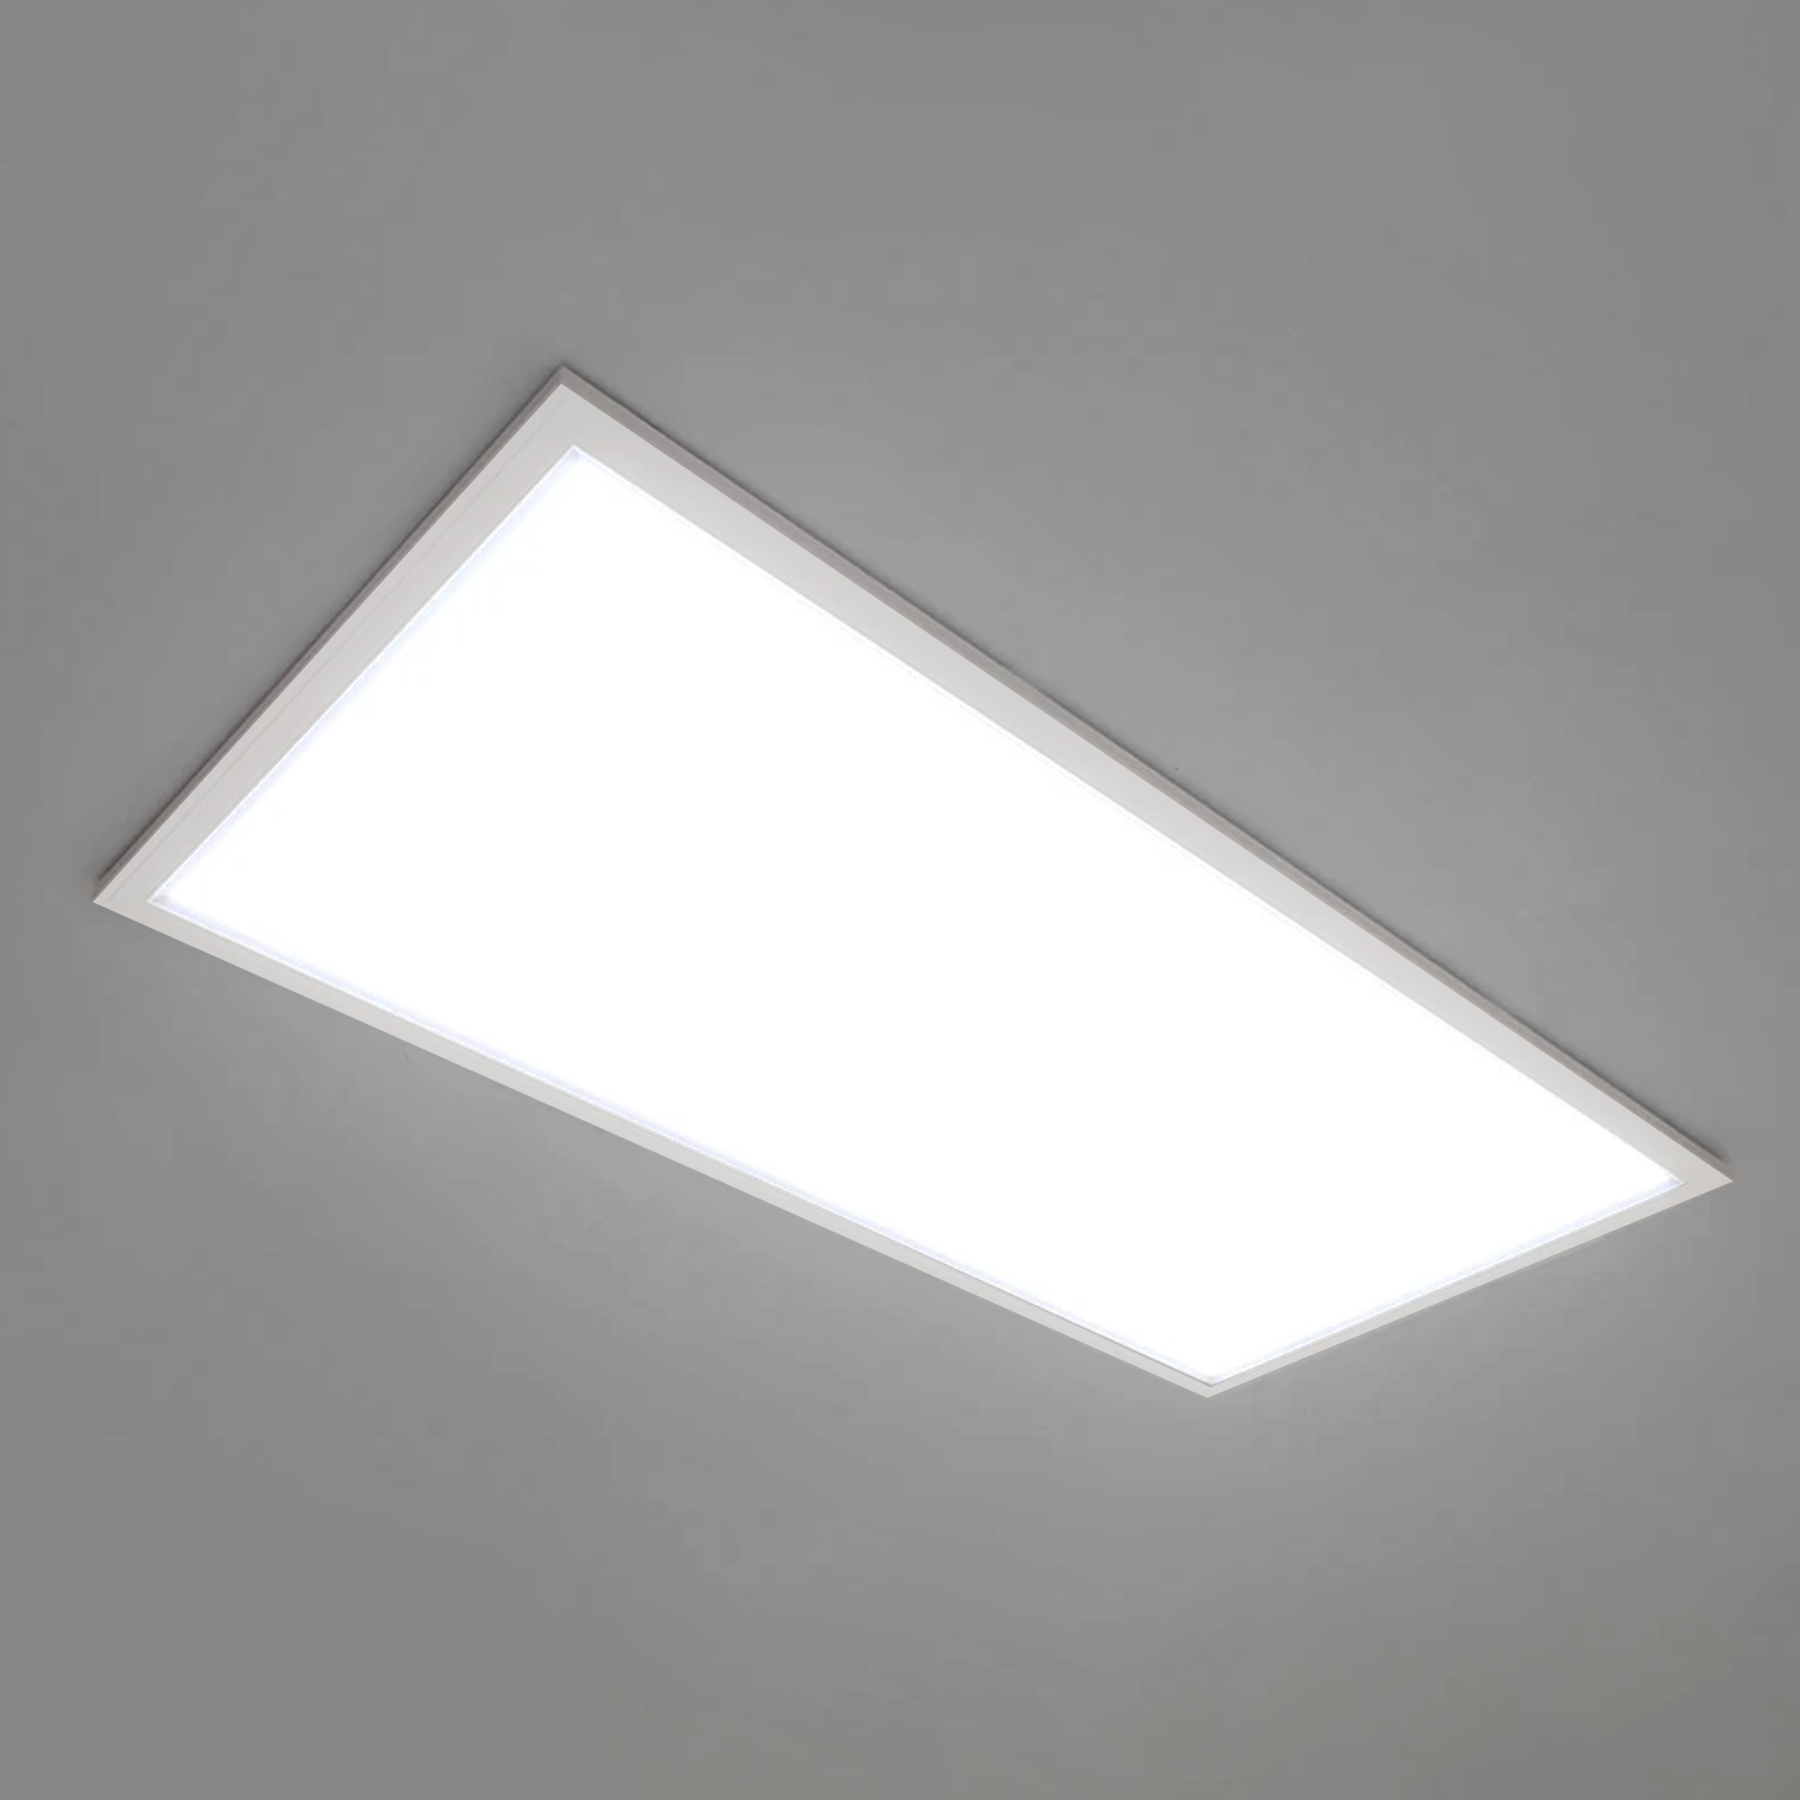 LED Slim Emergency Light, White Housing